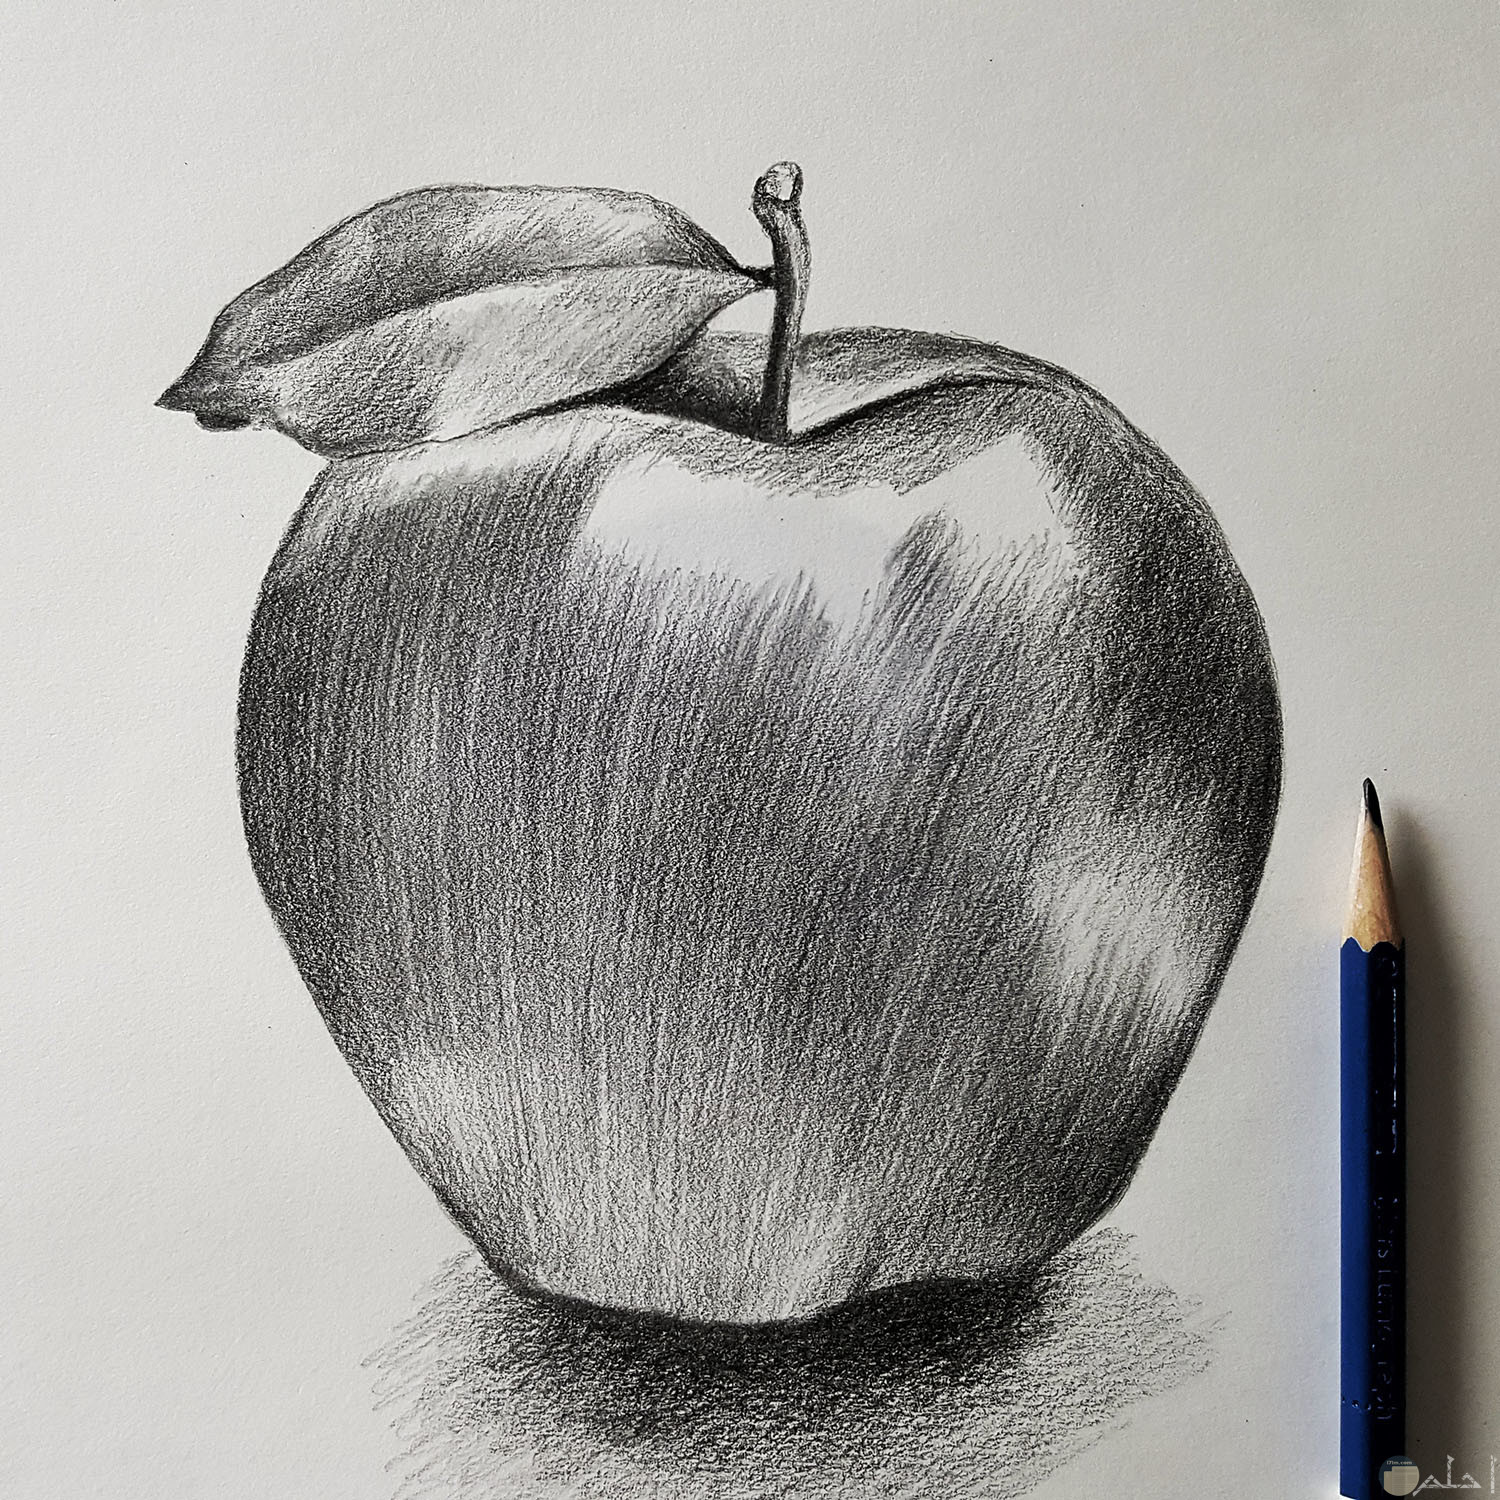 رسمة تفاحة مرسومة بالرصاص.